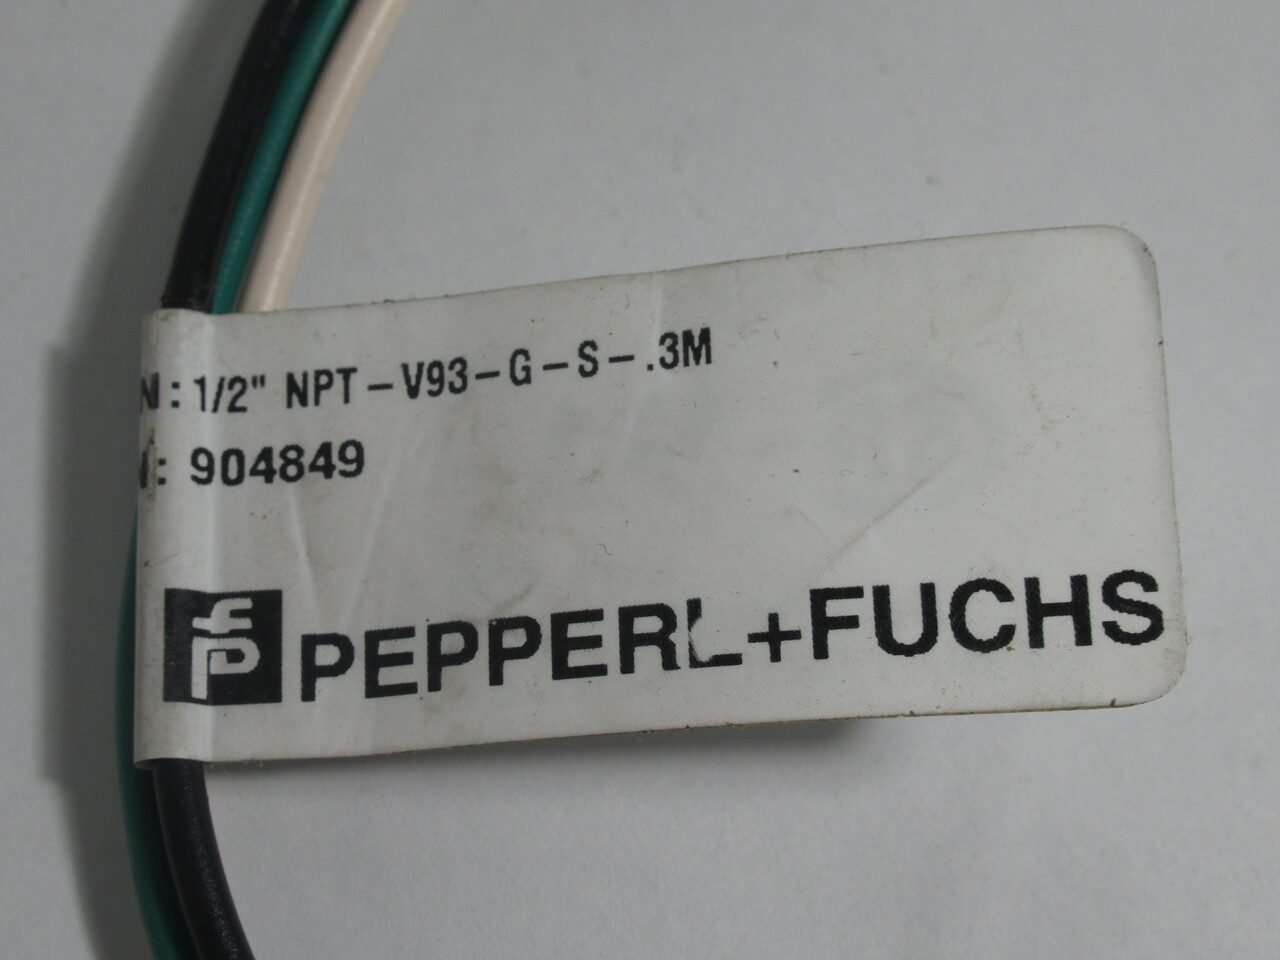 Pepperl + Fuchs 904849 Male Receptacle 1/2" NPT-V93-G-S-.3M 600V 13Amp USED